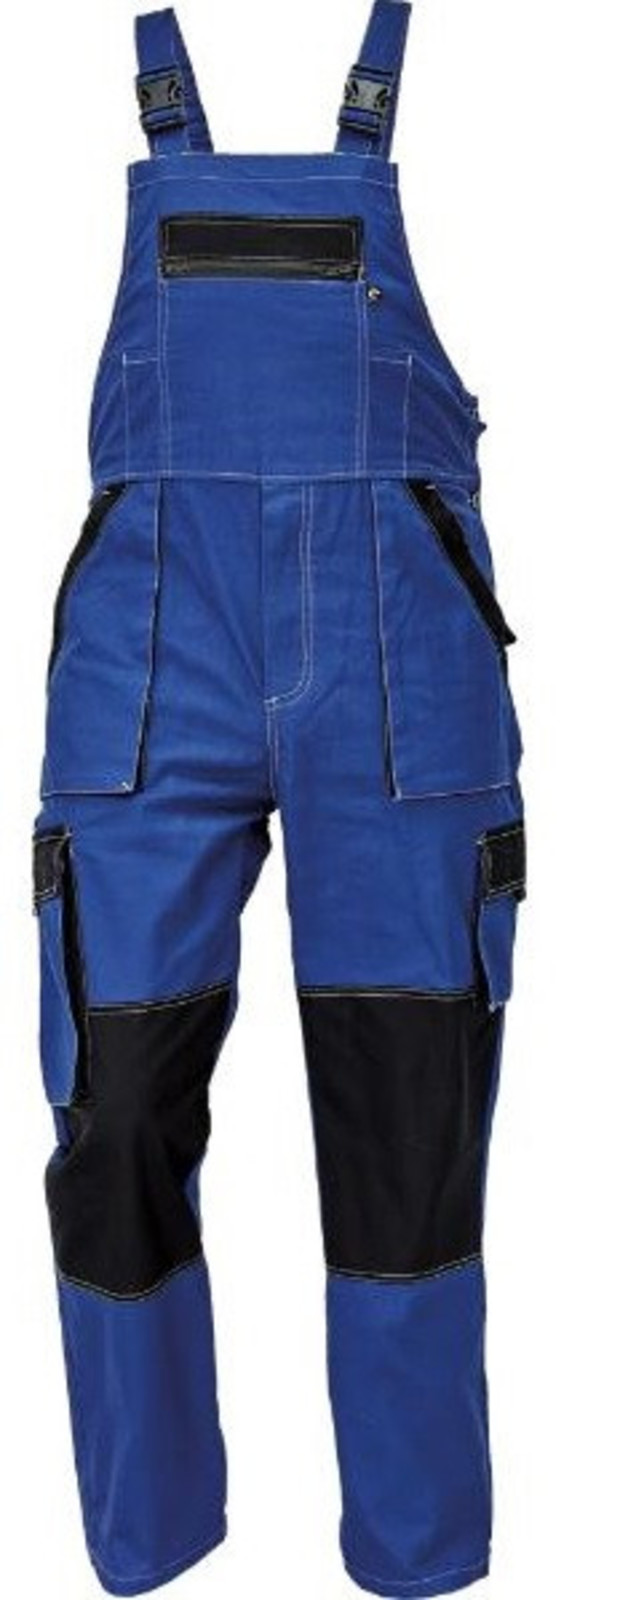 Tenšie bavlnené montérky na traky Max Summer - veľkosť: 62, farba: modrá/čierna